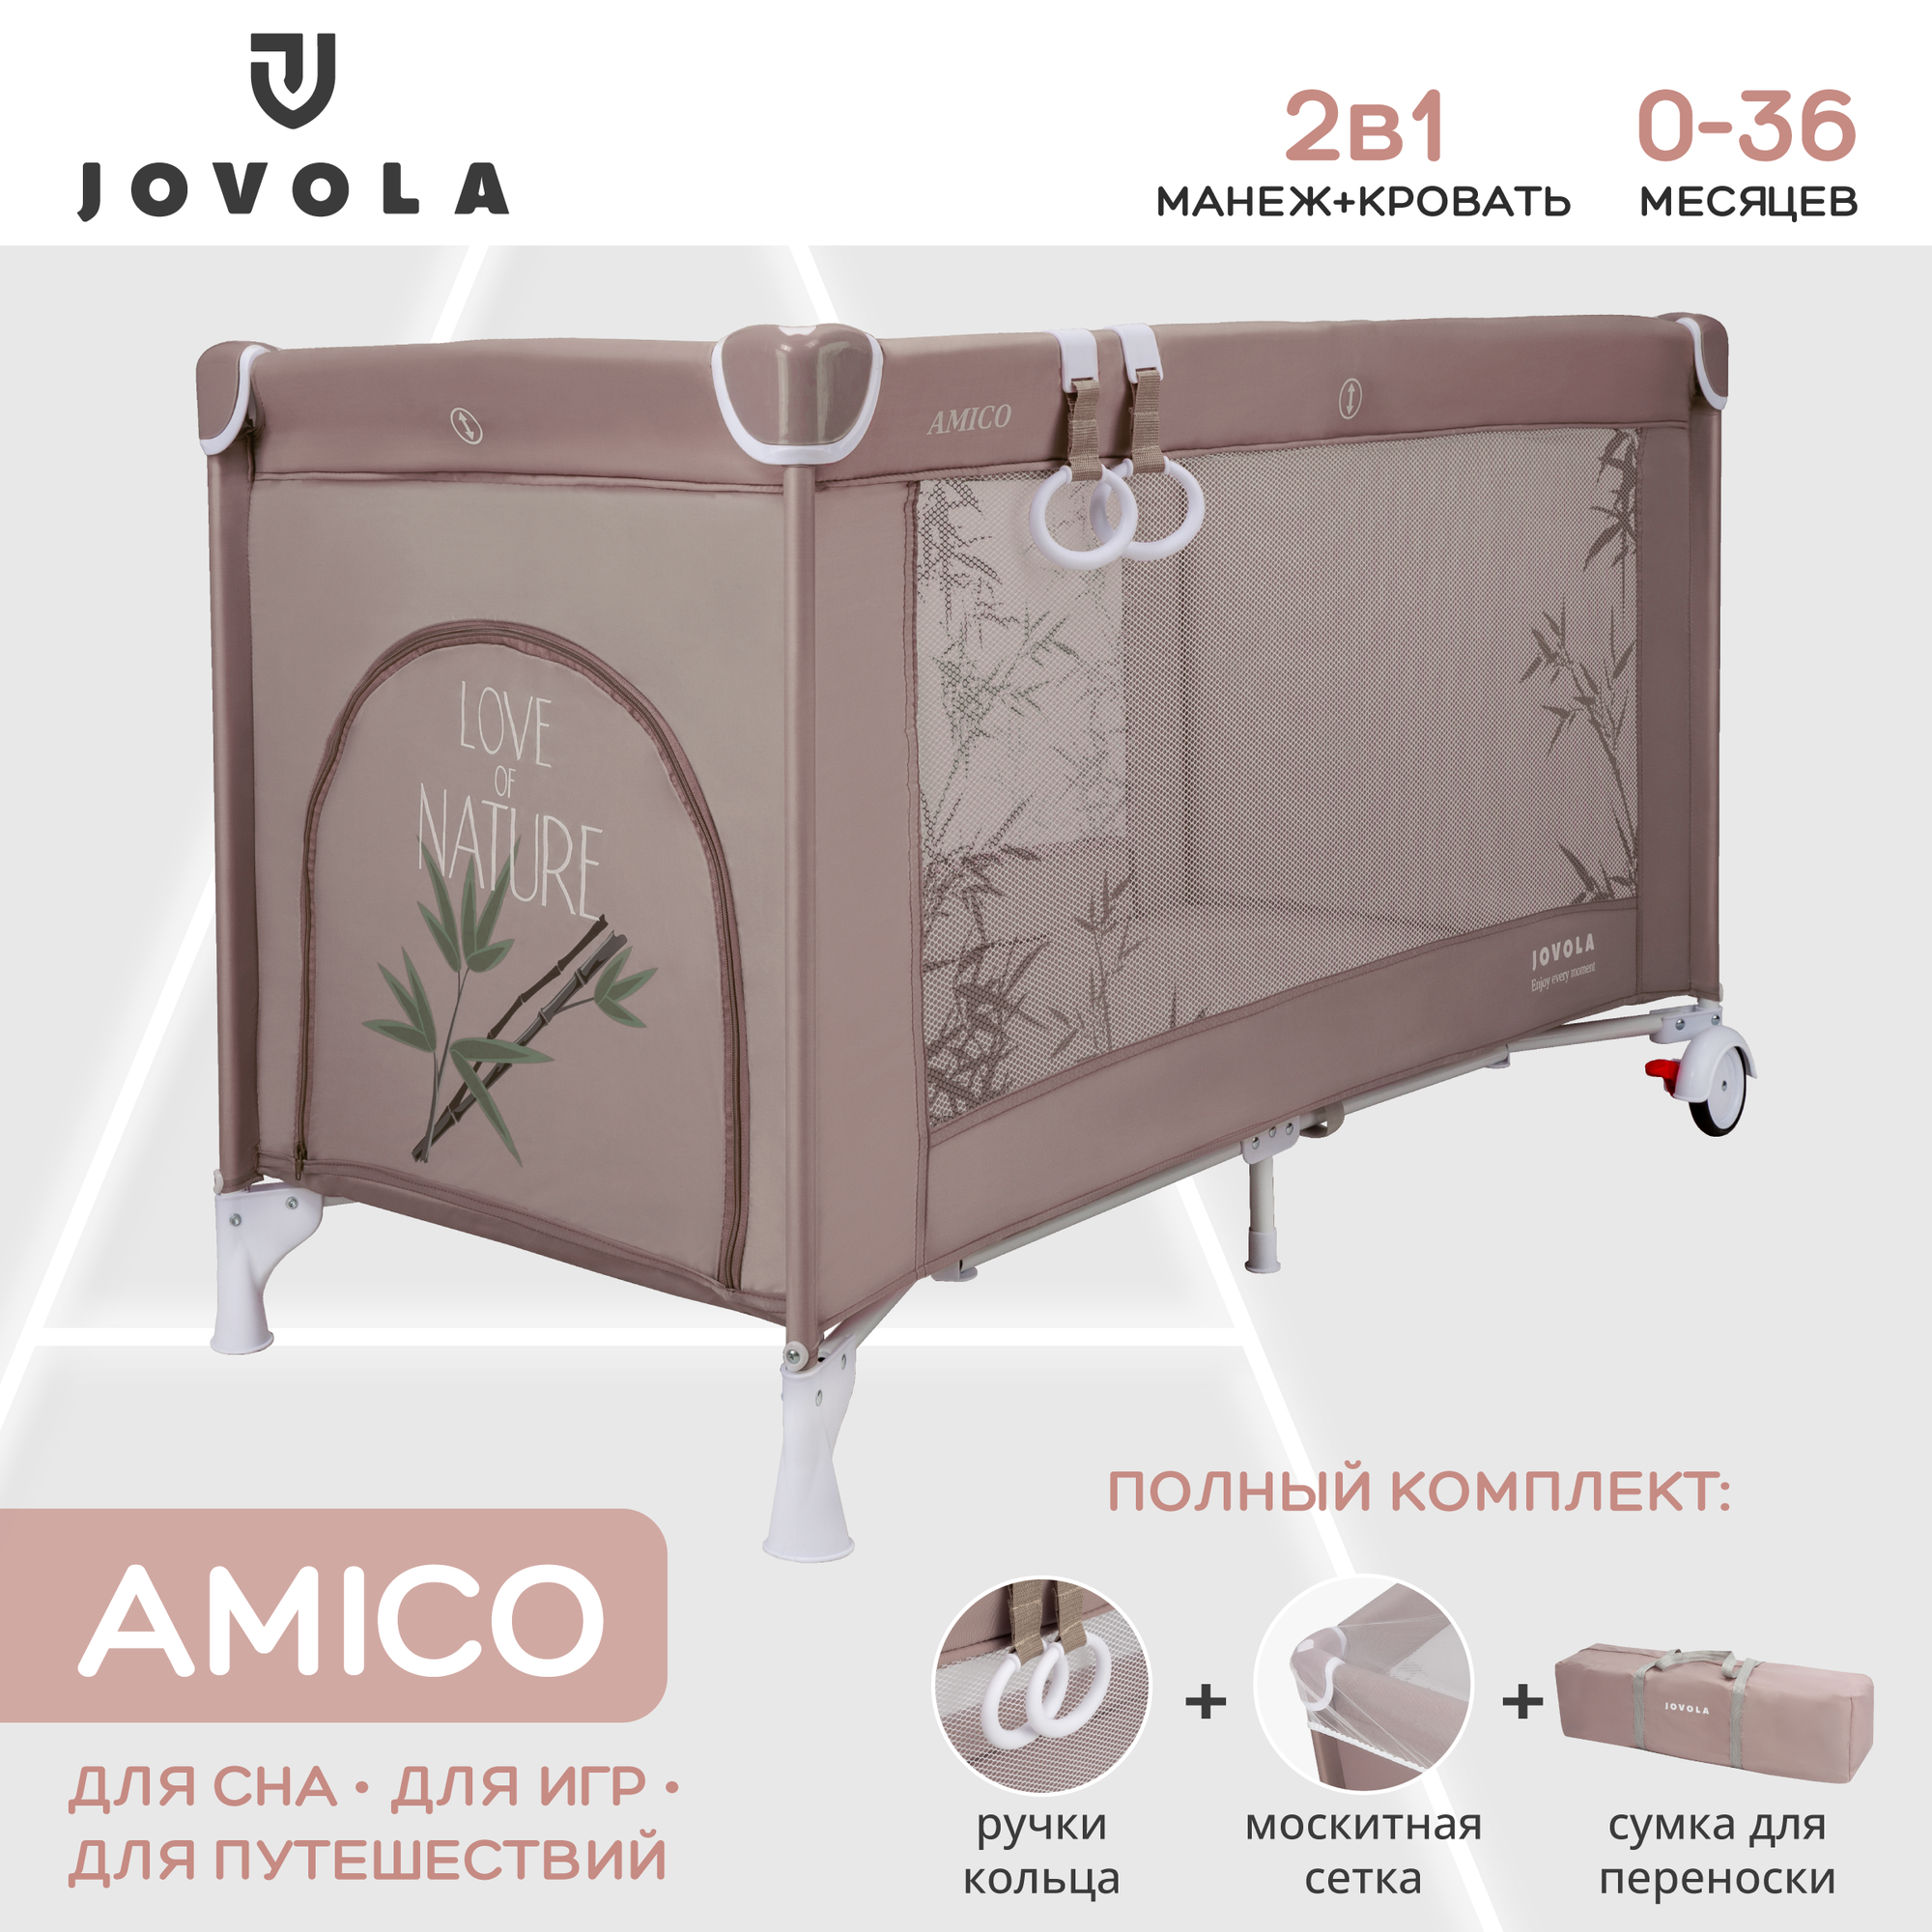 Манеж-кровать JOVOLA AMICO, 0-36 мес, складной, с аксессуарами, 1 уровень, бежевый бамбук